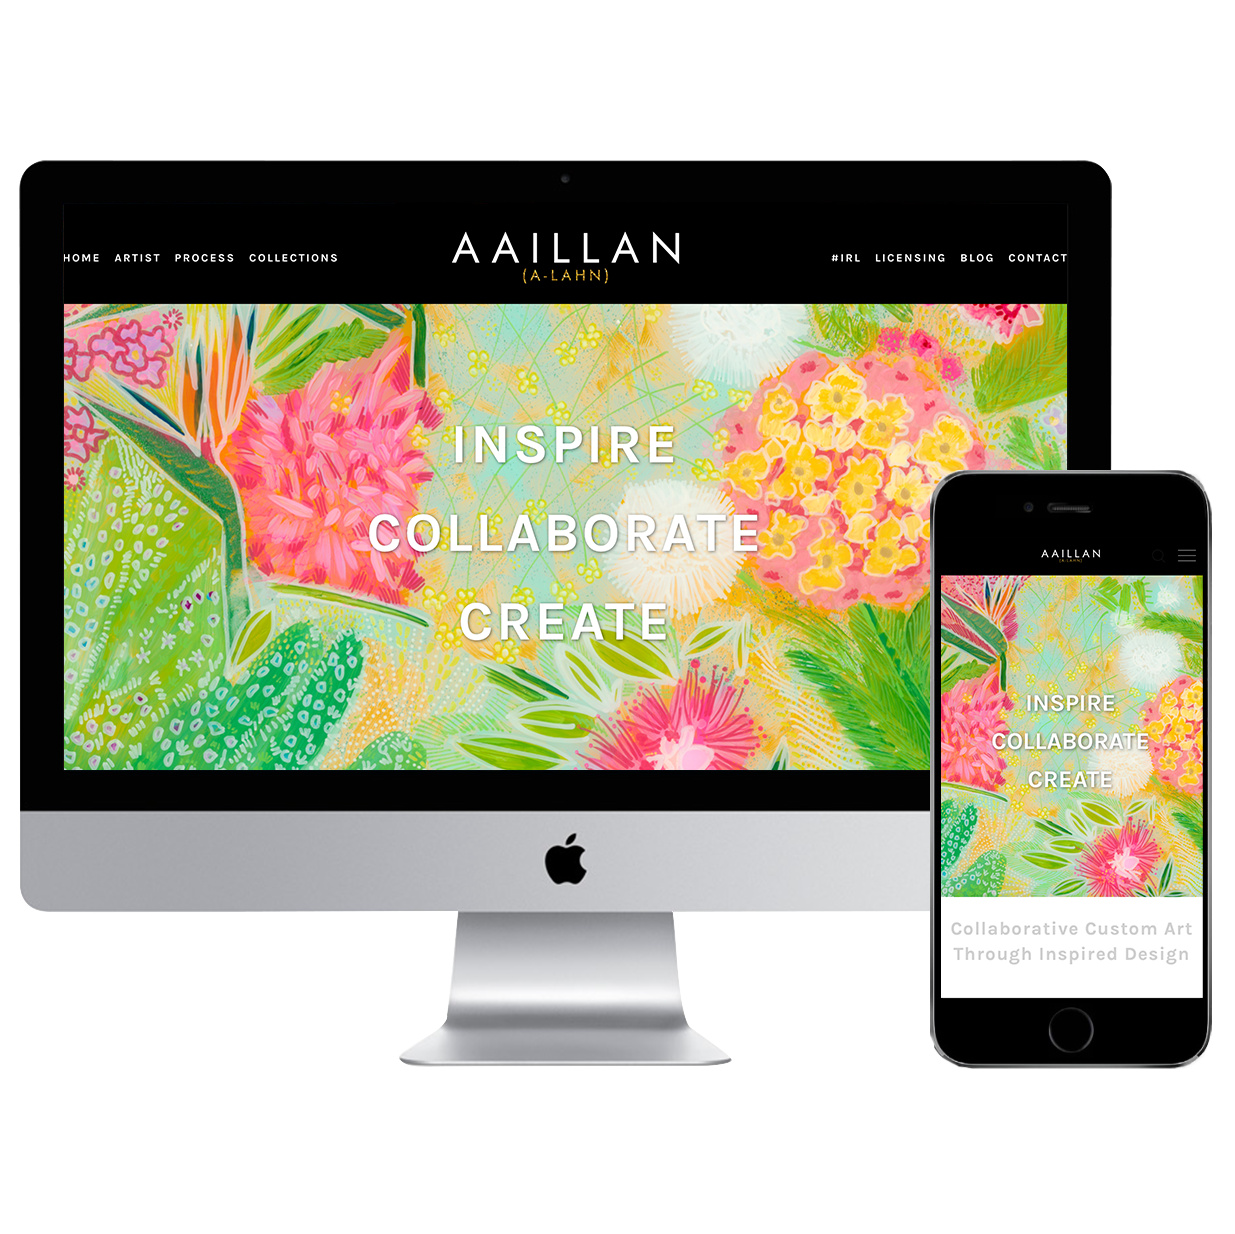 AAILLAN.com